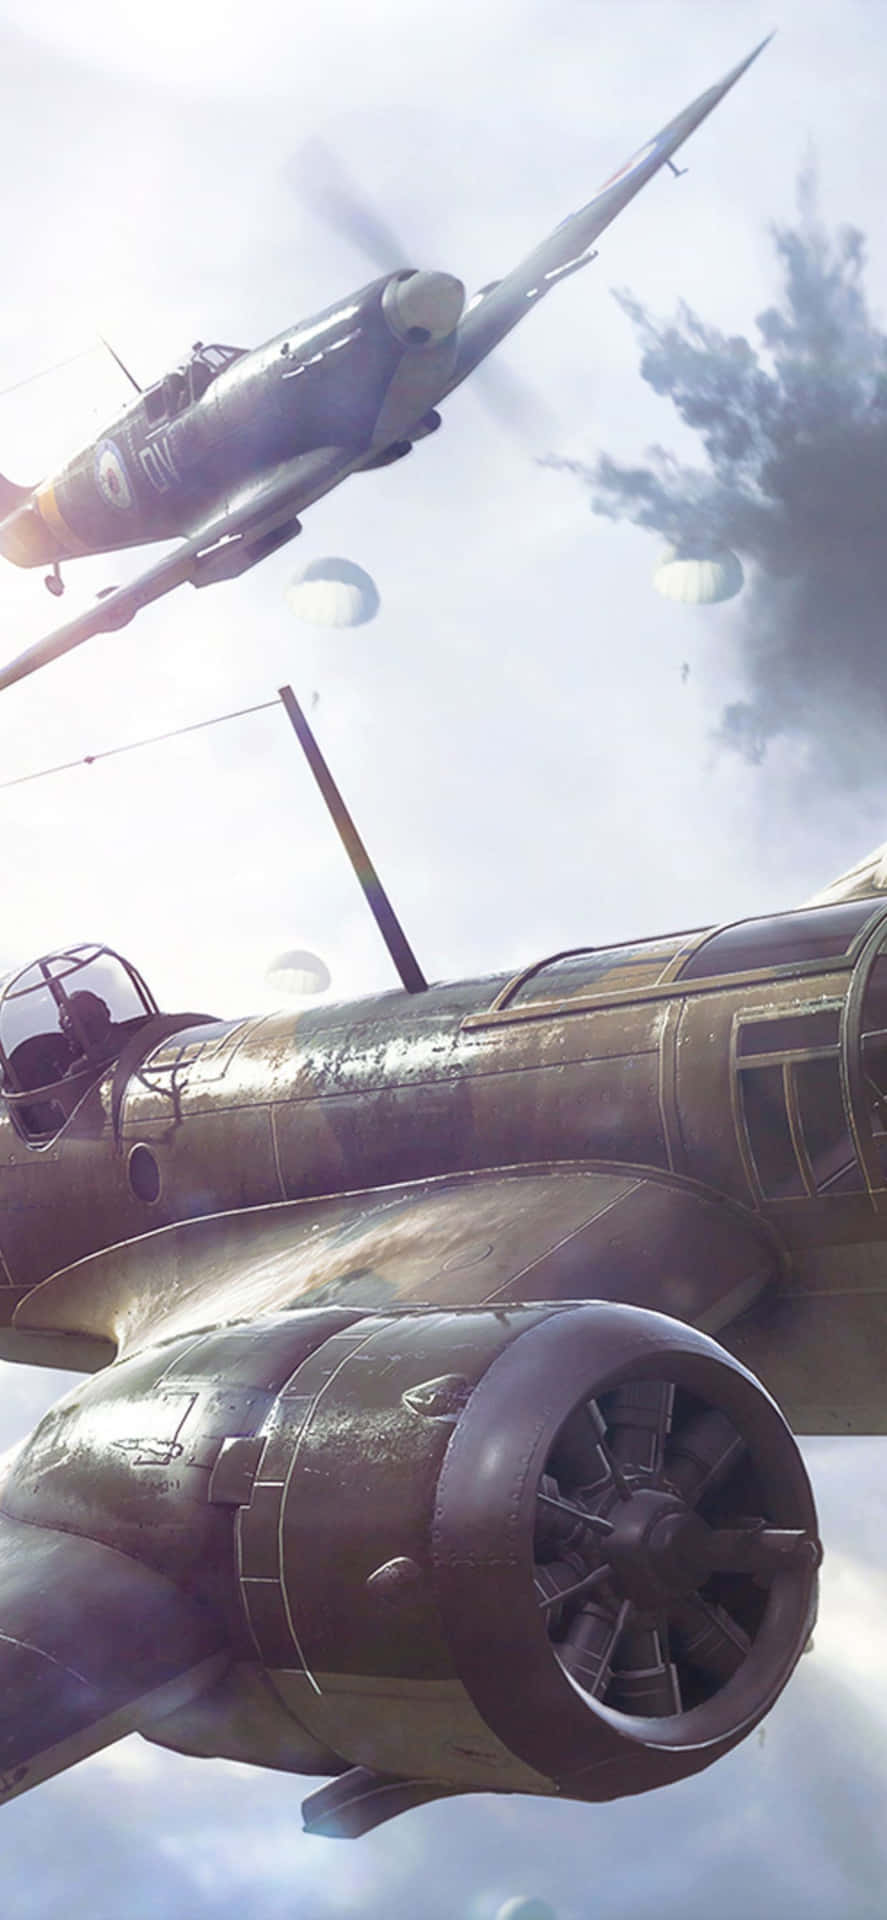 Iphonexs Max Bakgrundsbild För Battlefield V Planes-företaget.